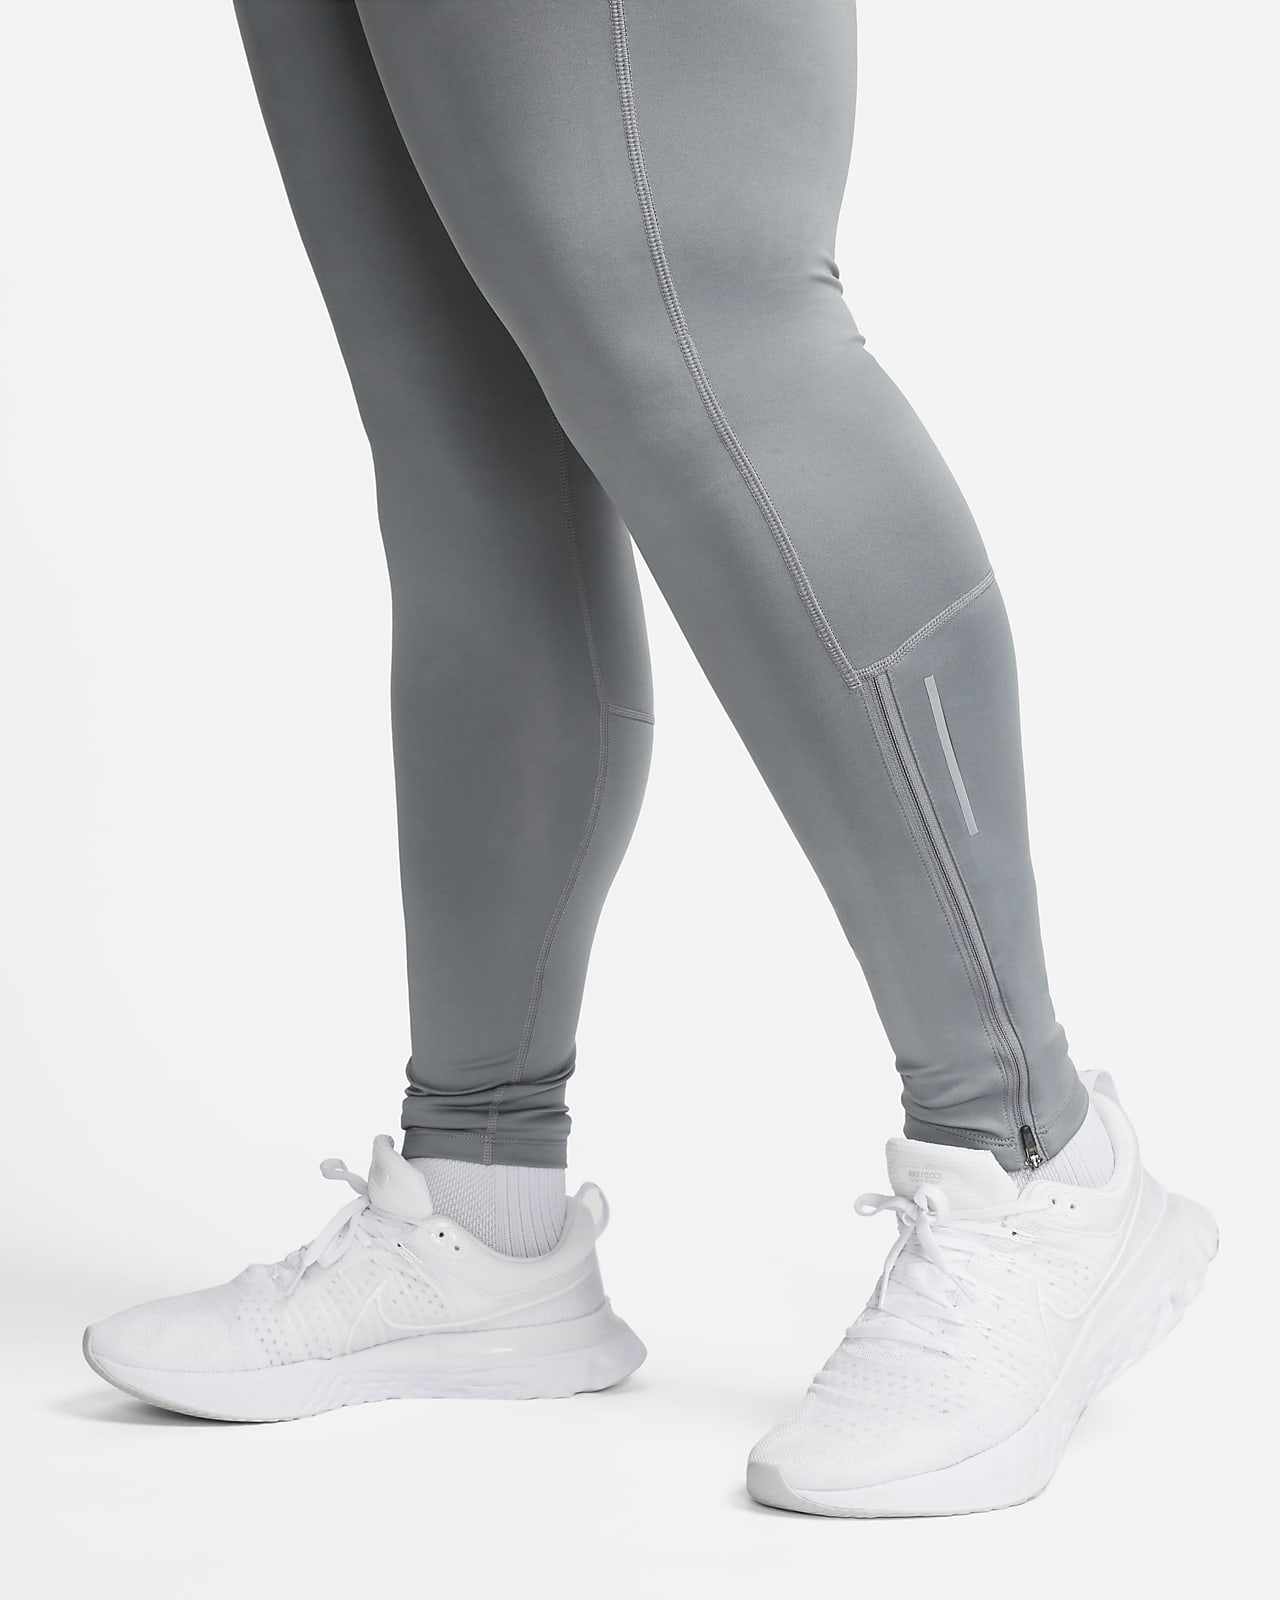 Mallas de running acondicionadas para el invierno para hombre Nike Lunar  Ray.